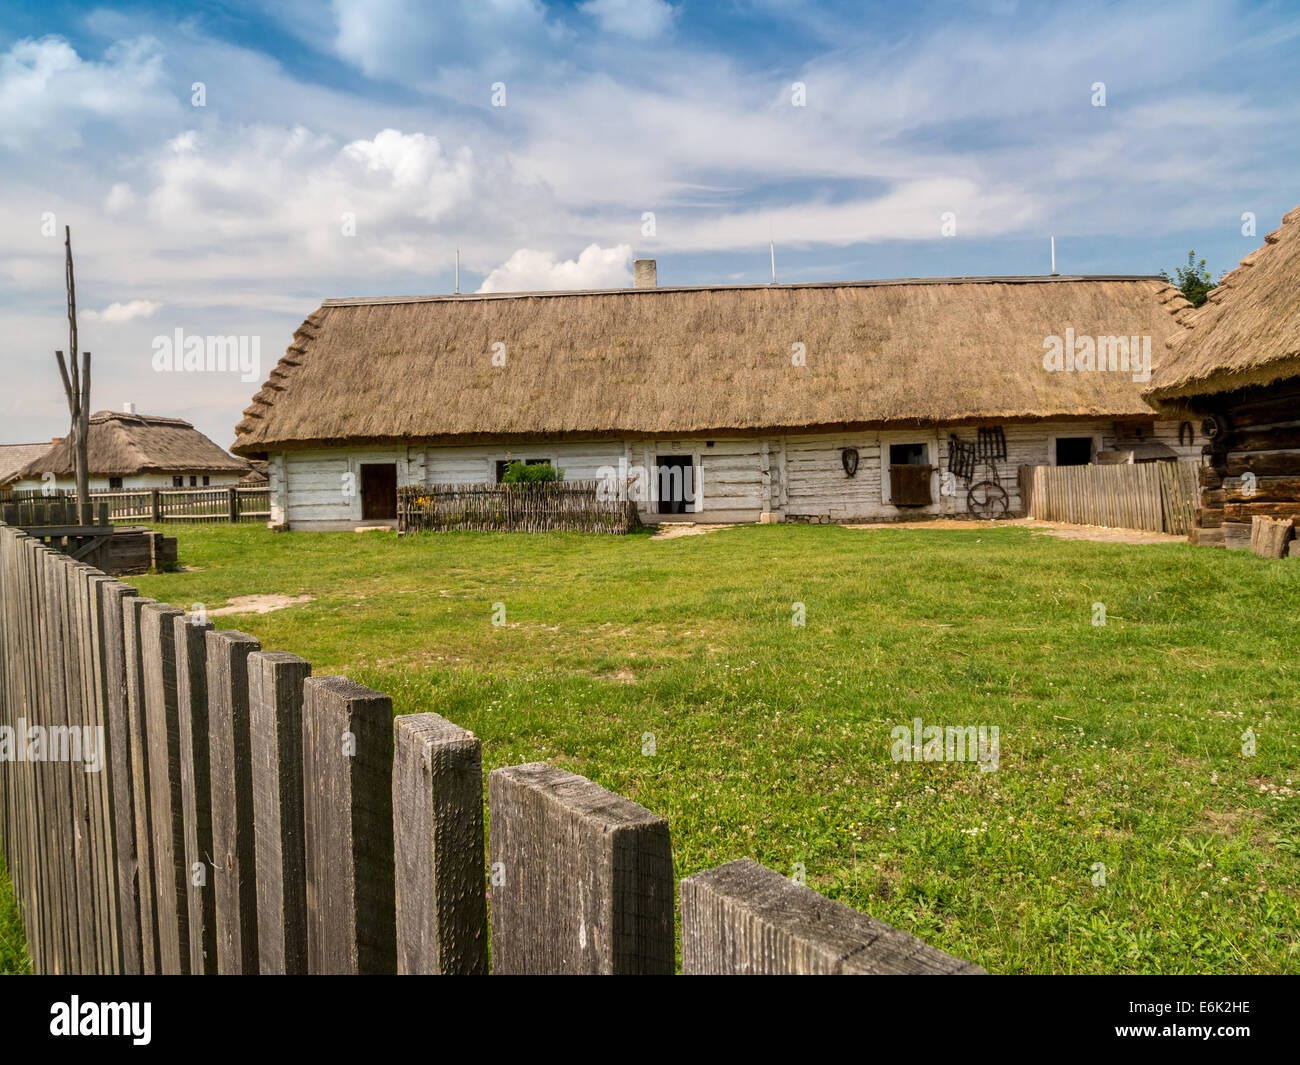 Style ancienne ferme polonaise avec dépendances et chaume picket fence tourné contre le ciel bleu Banque D'Images